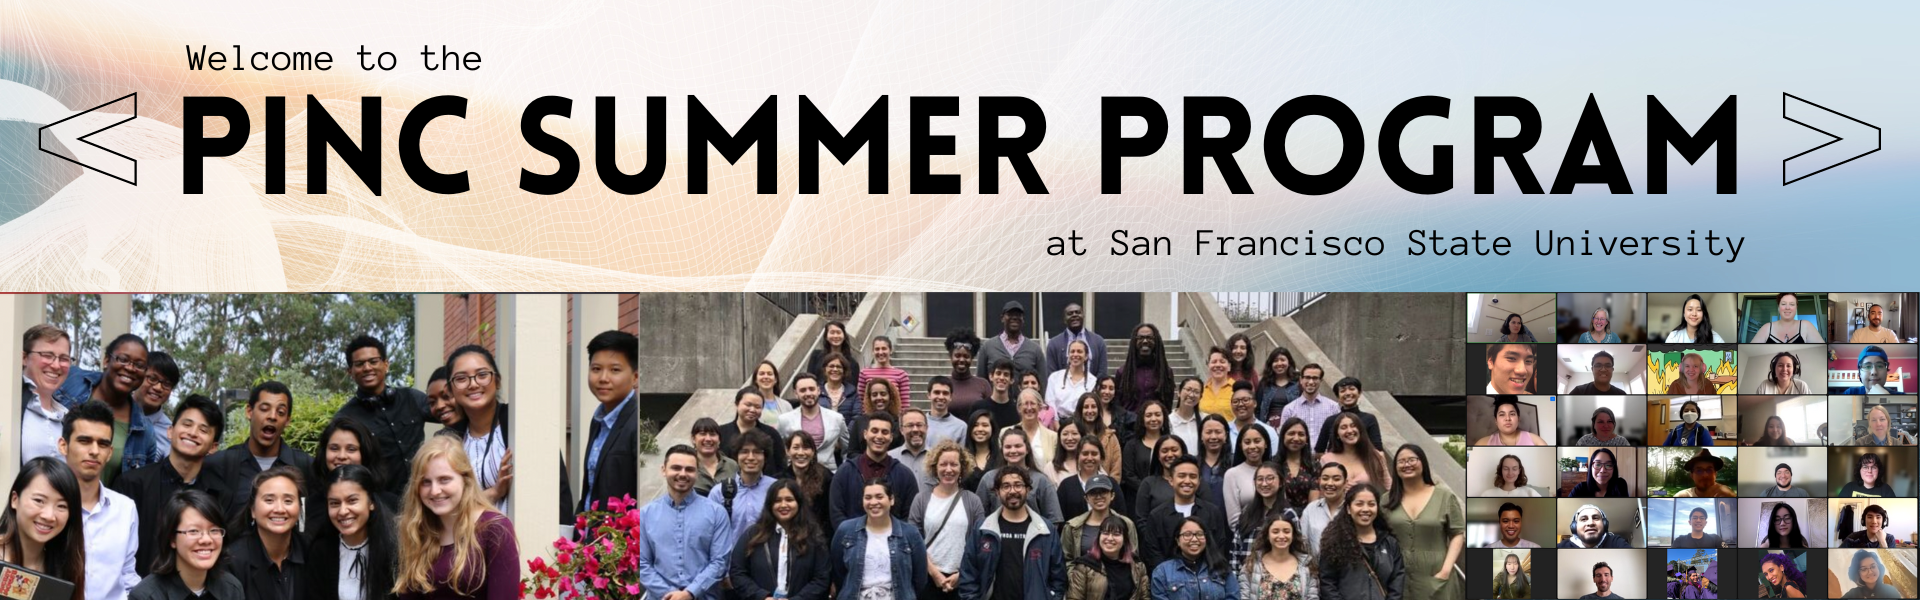 PINC Summer Program Banner